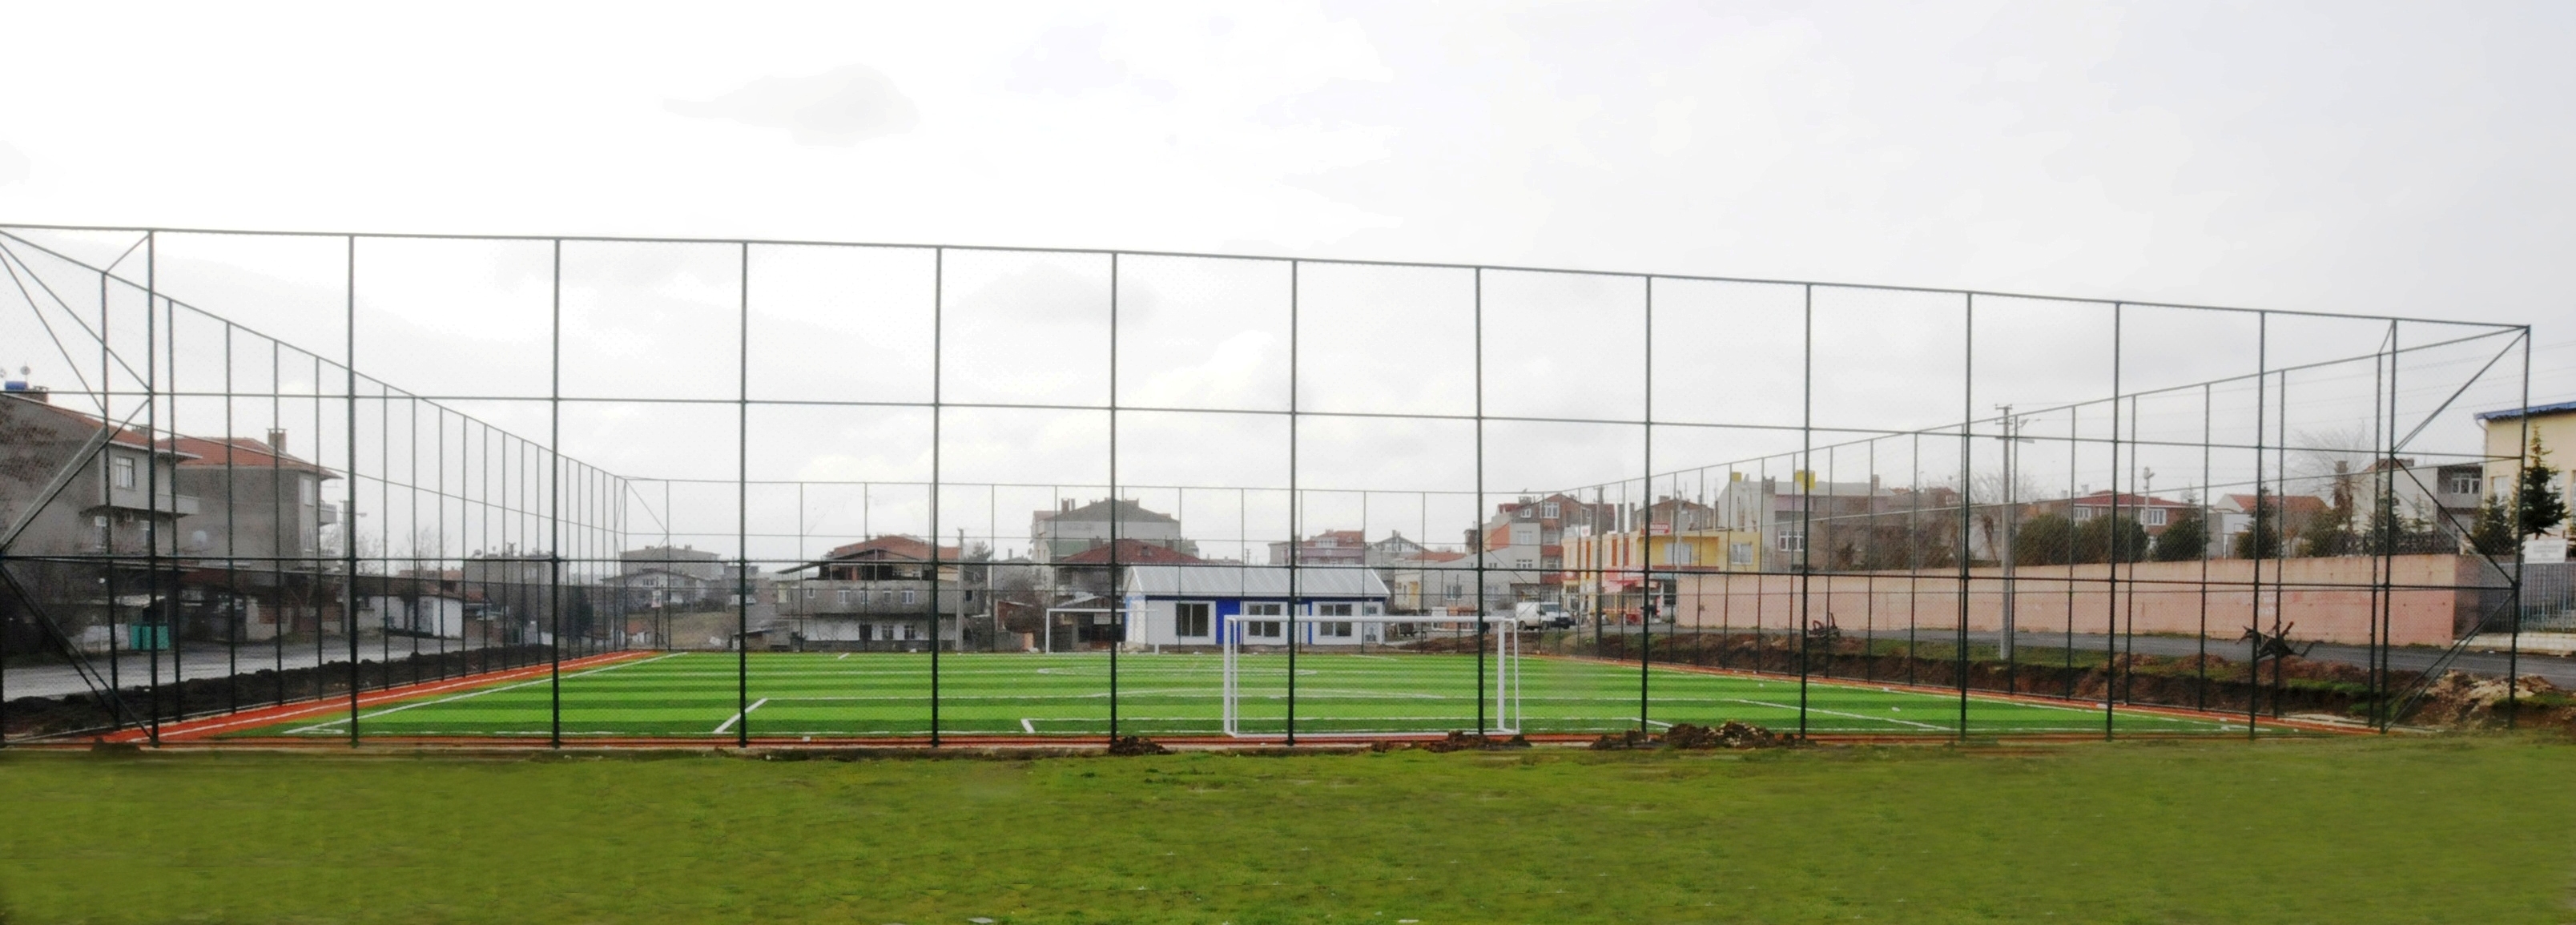 Salk Mahallesinde Yeni Futbol Sahas Yapld